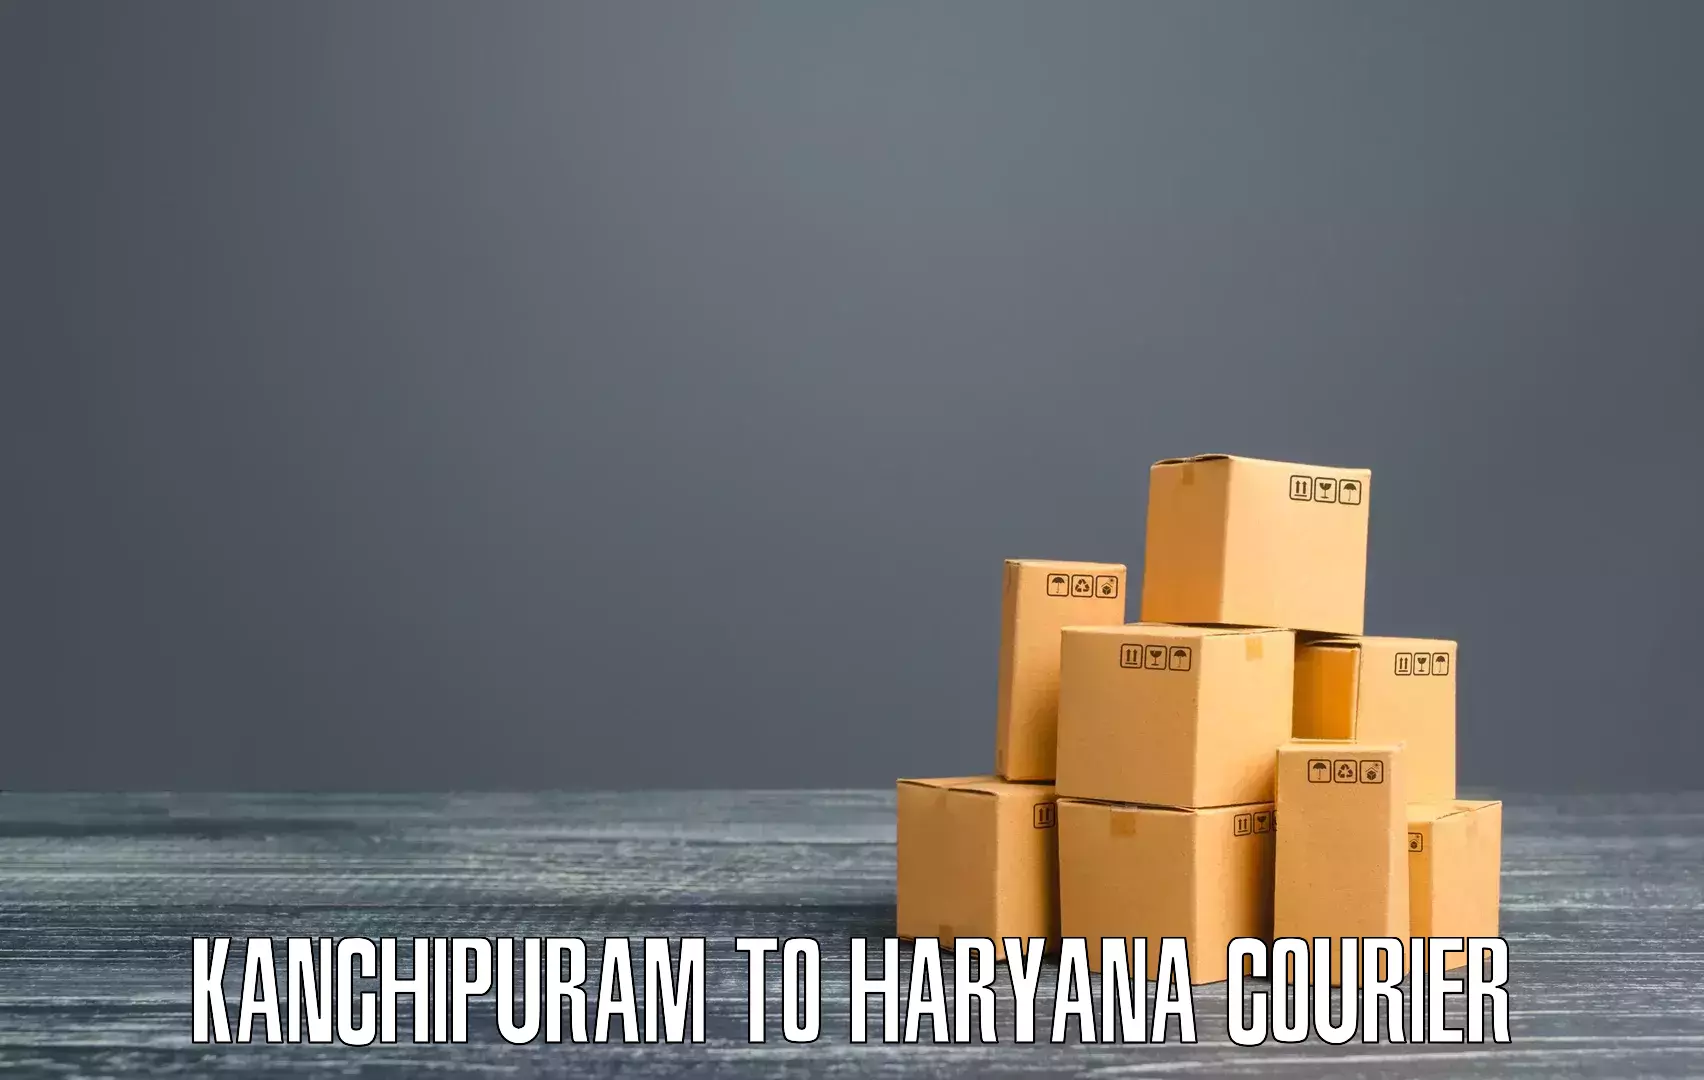 Wholesale parcel delivery in Kanchipuram to Kurukshetra